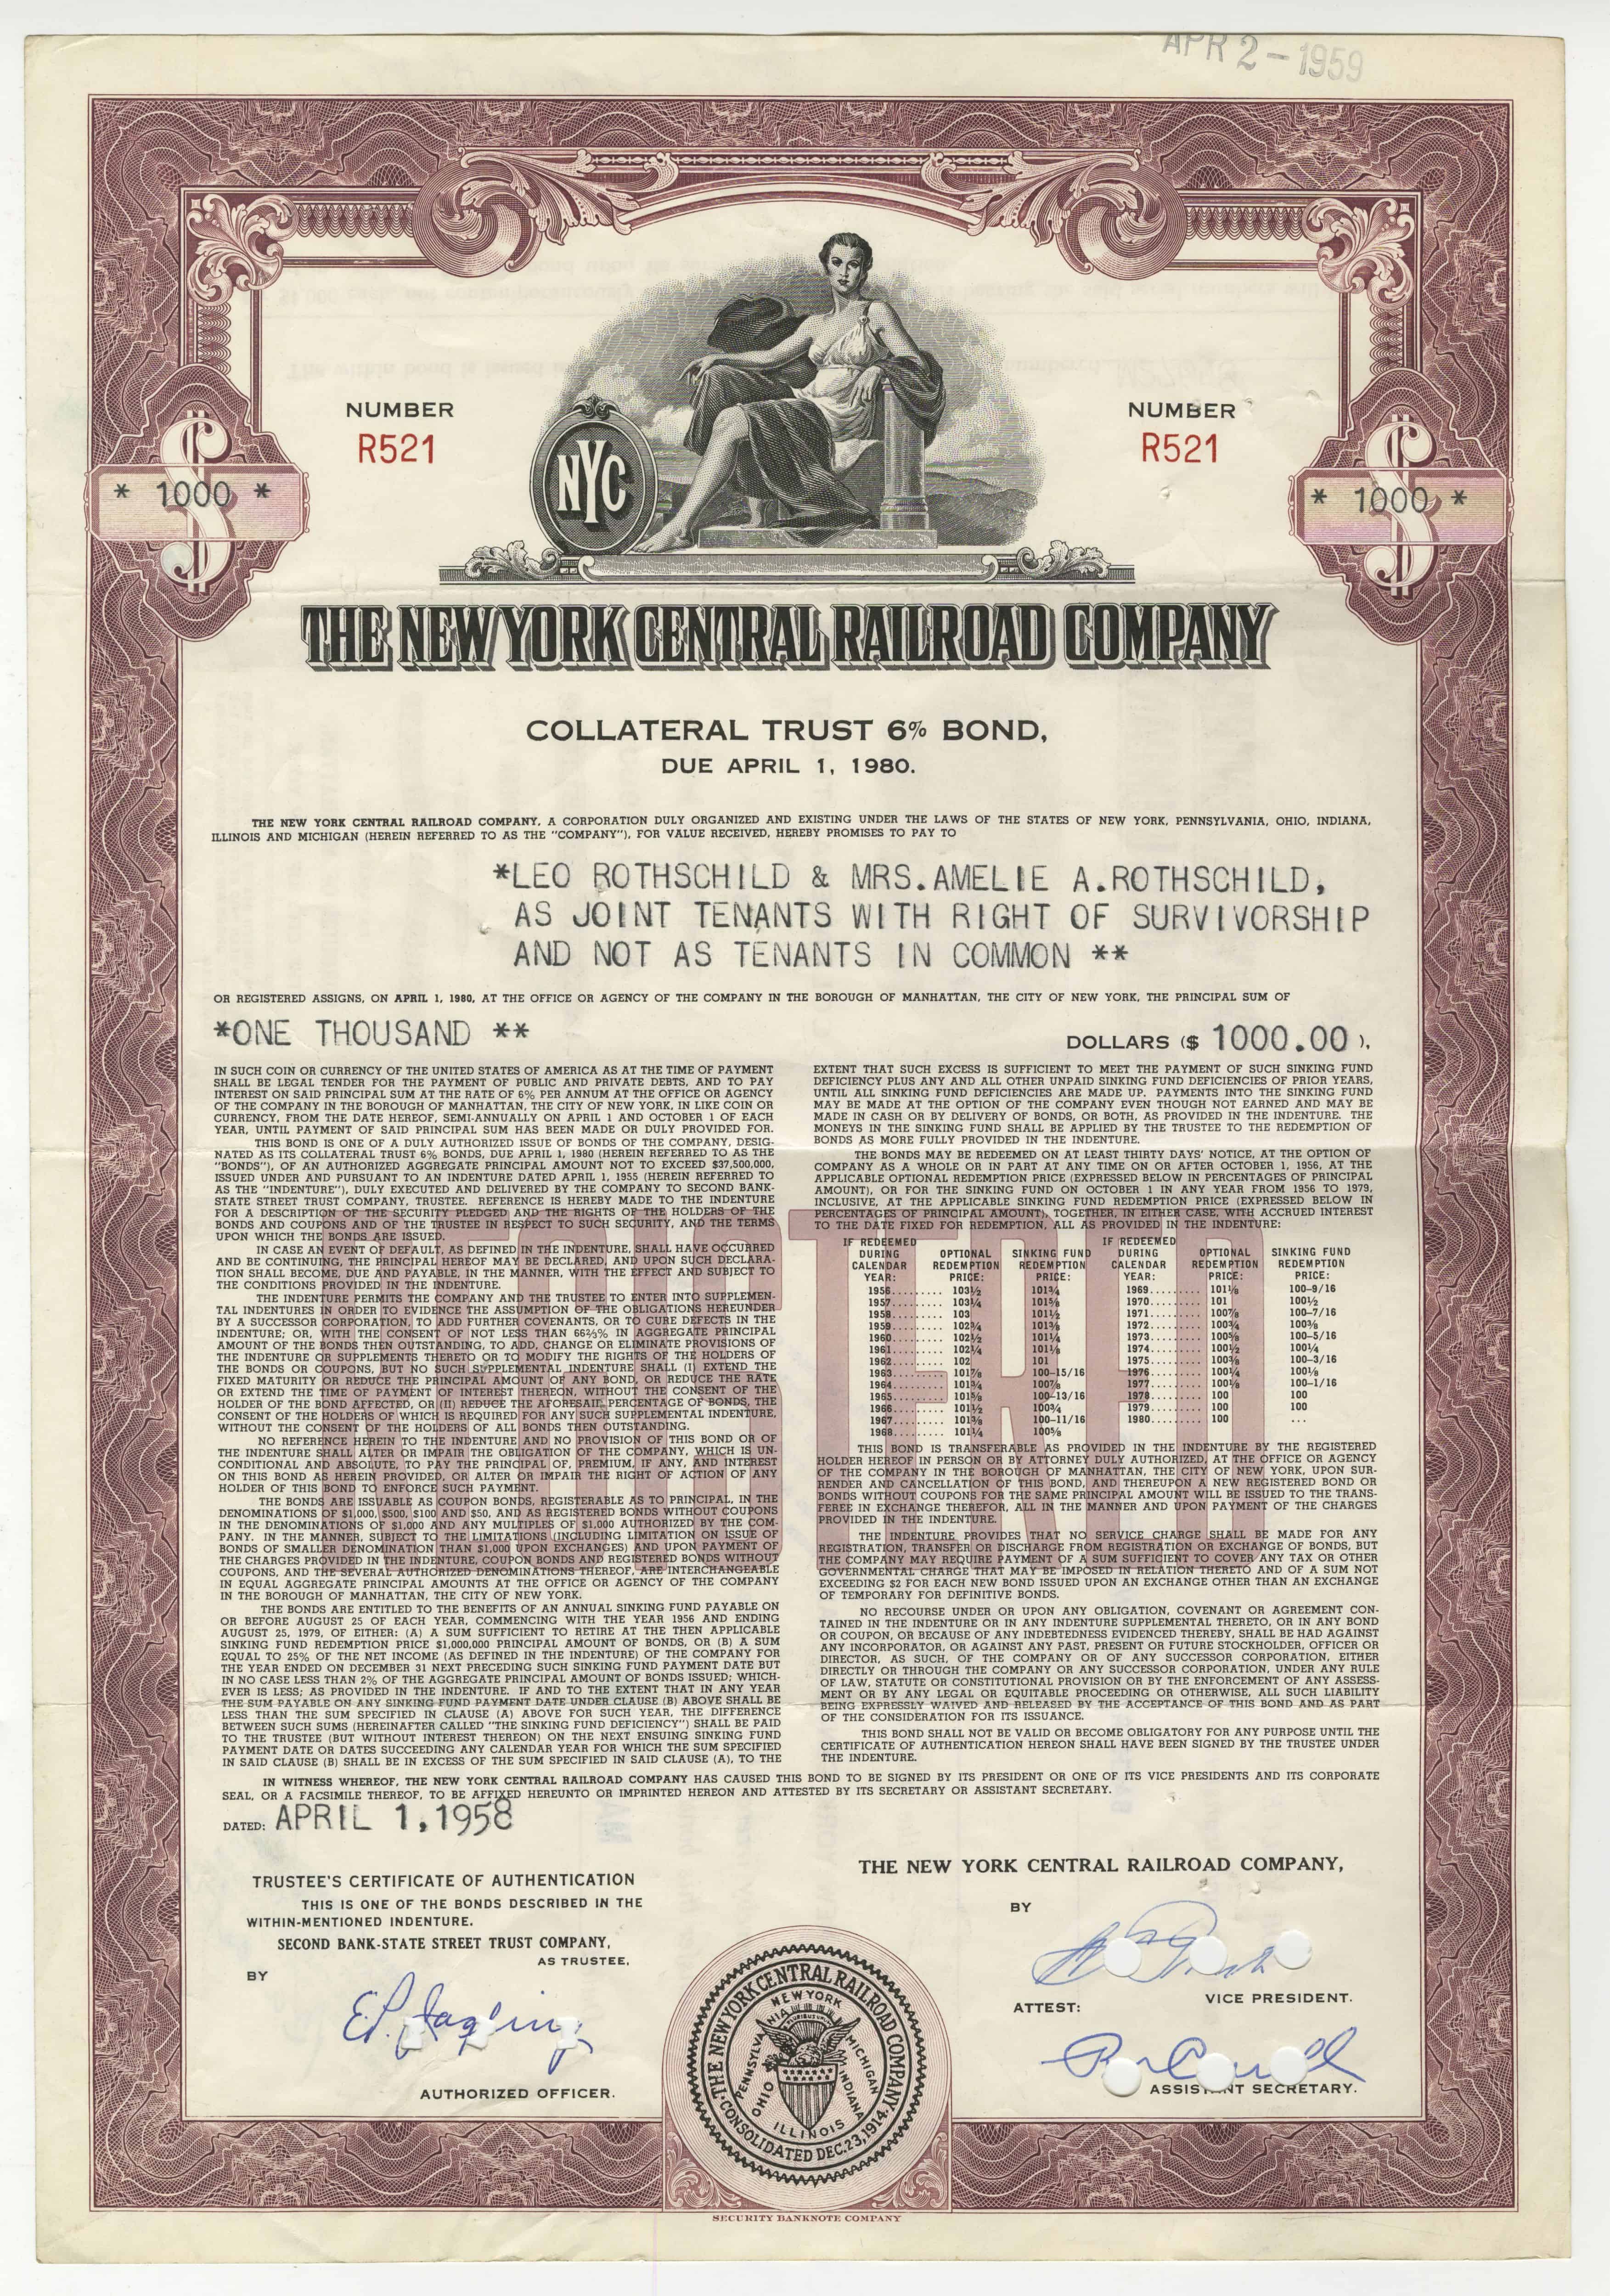 Obligacji The New York Central Railroad Company z 1 kwietnia 1958 roku